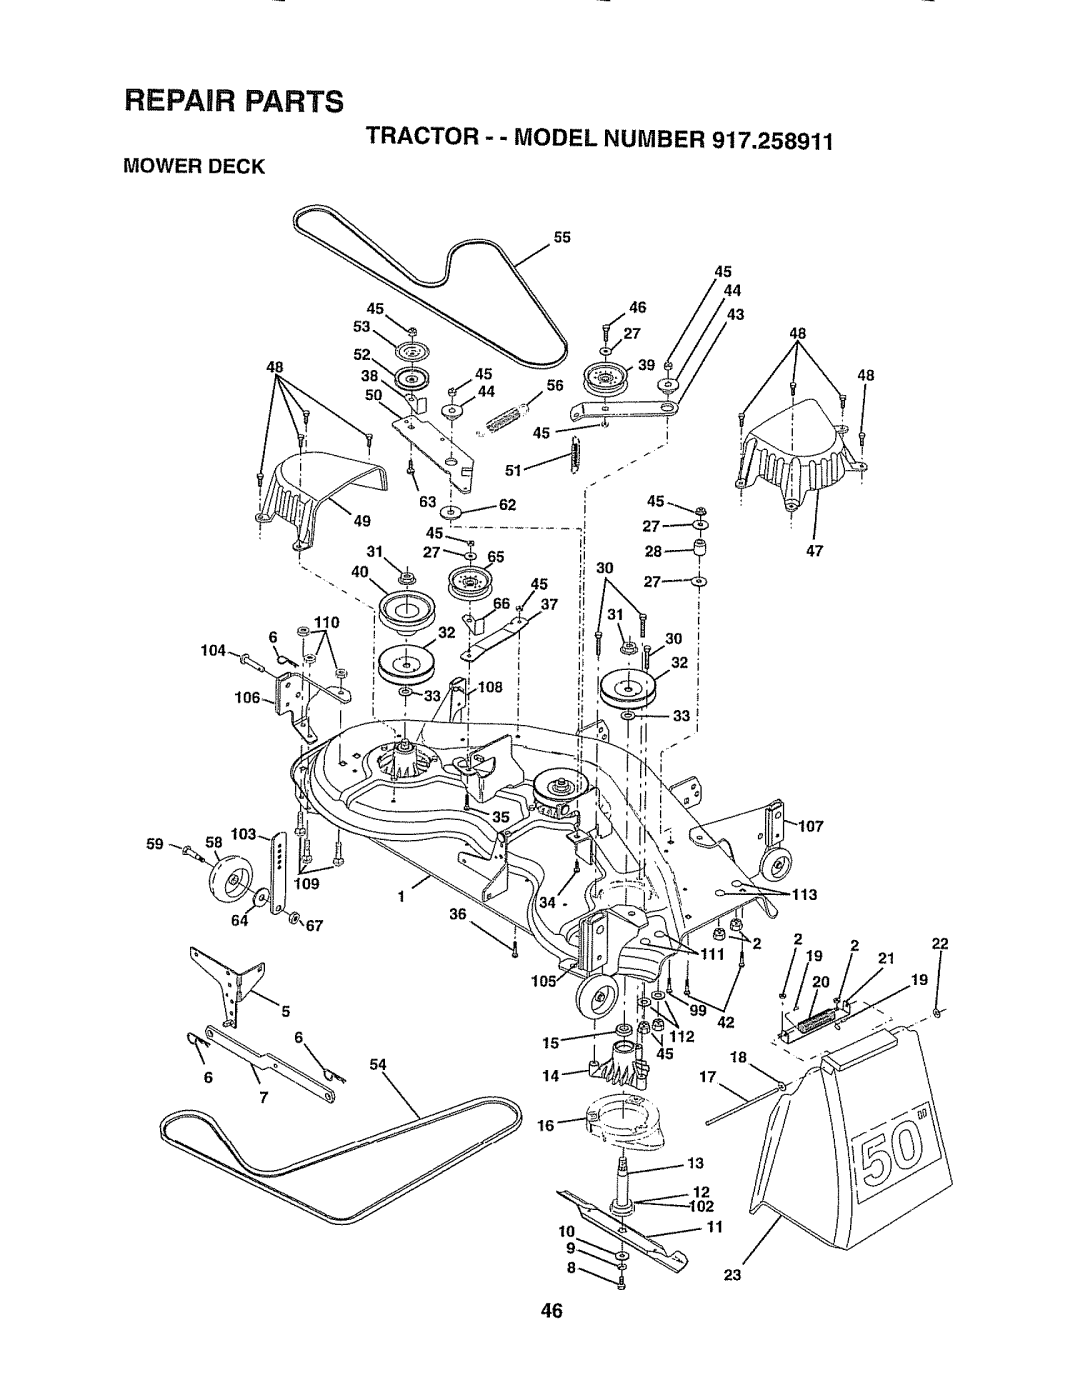 Craftsman 917.258911 owner manual Mower Deck, 55 45, 11 23, 222 21, Repair Parts, Tractor - - Model Number 